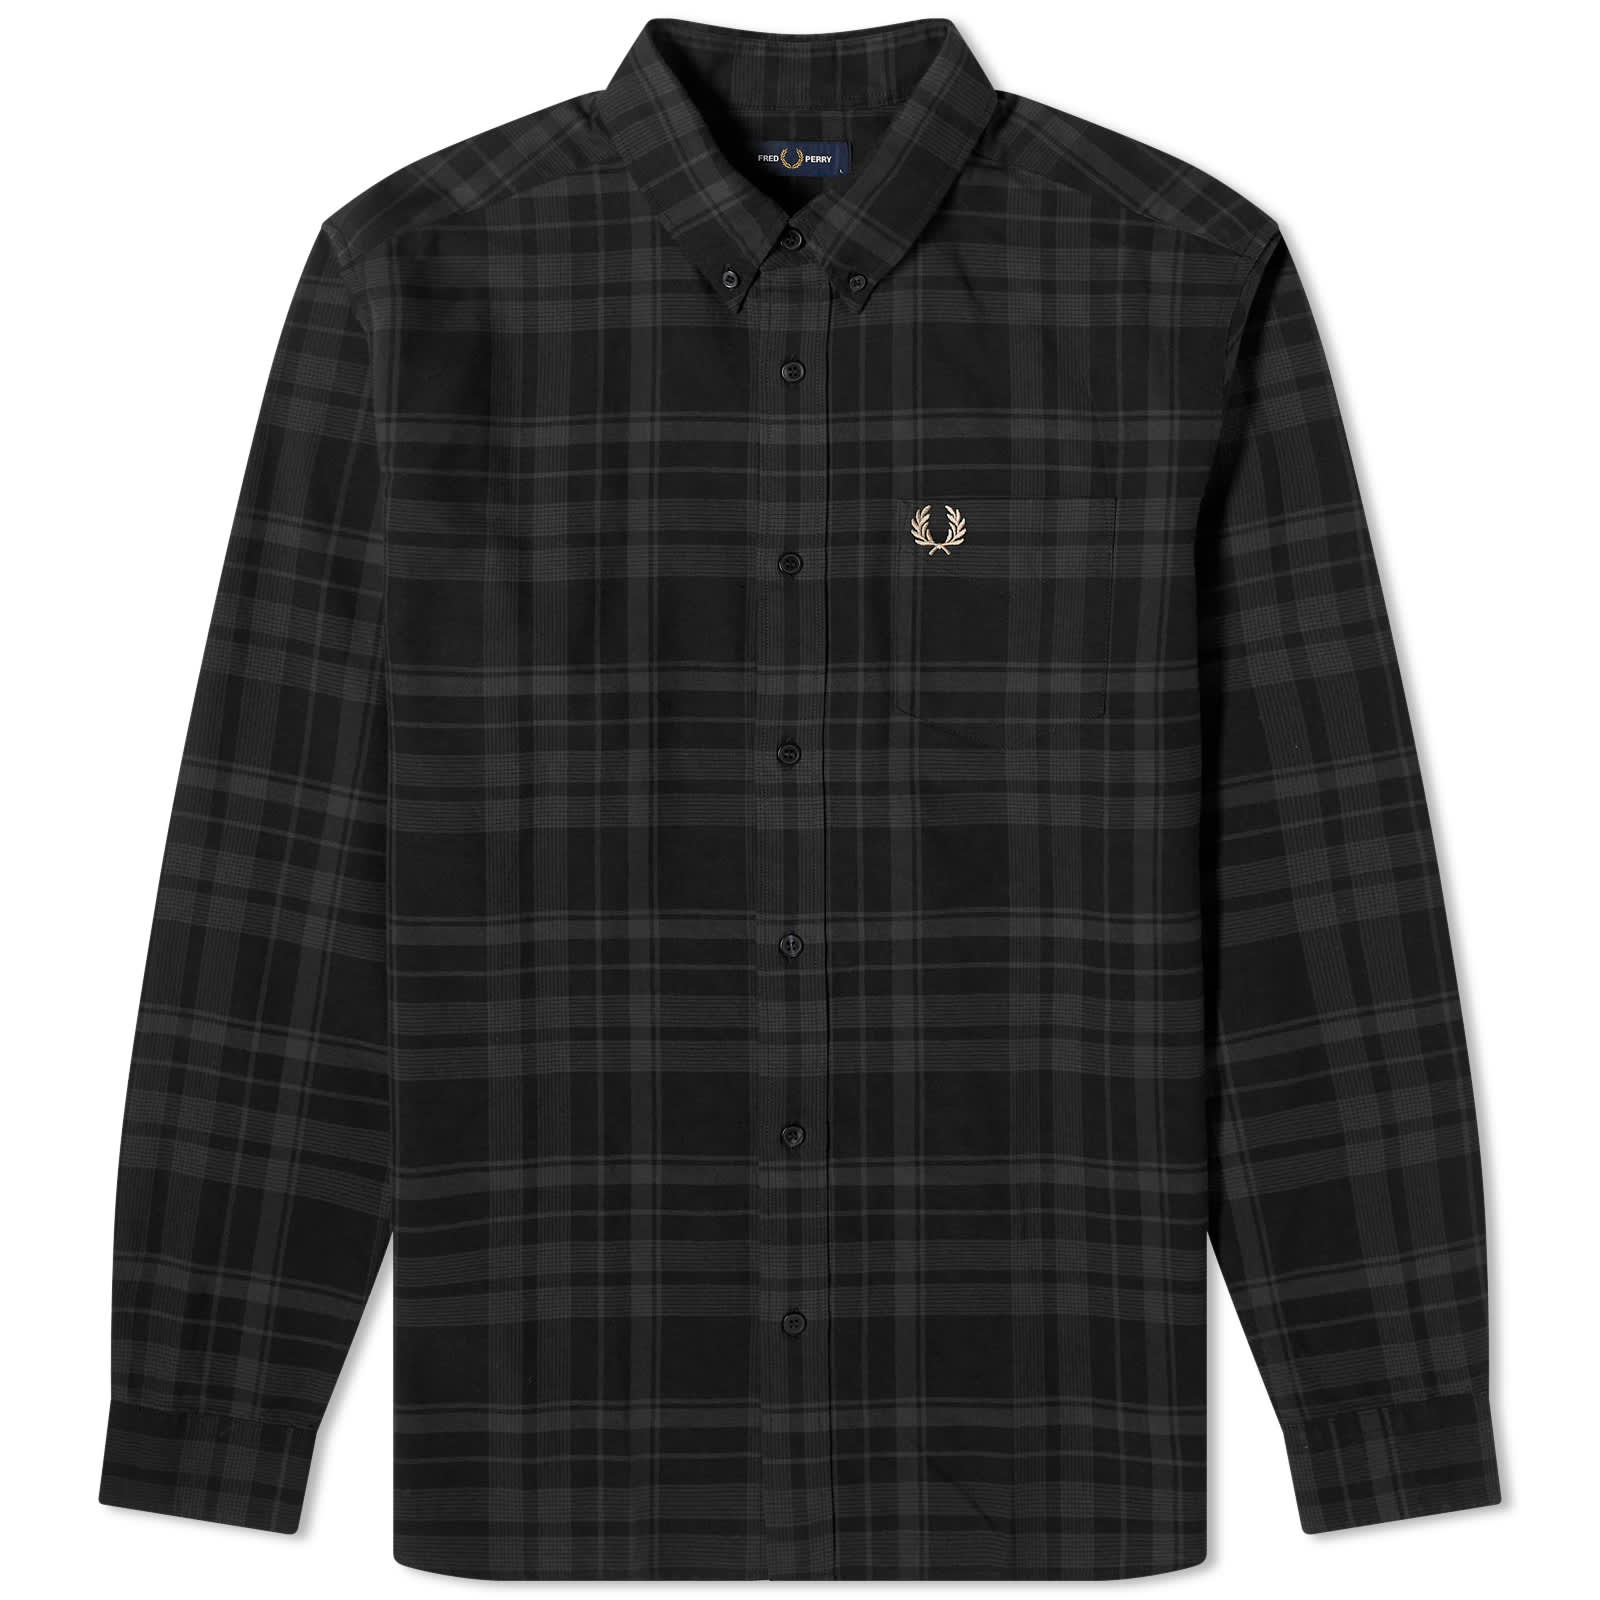 Рубашка Fred Perry Twill Tartan, черный рубашка fred perry utility overshirt цвет gunmetal